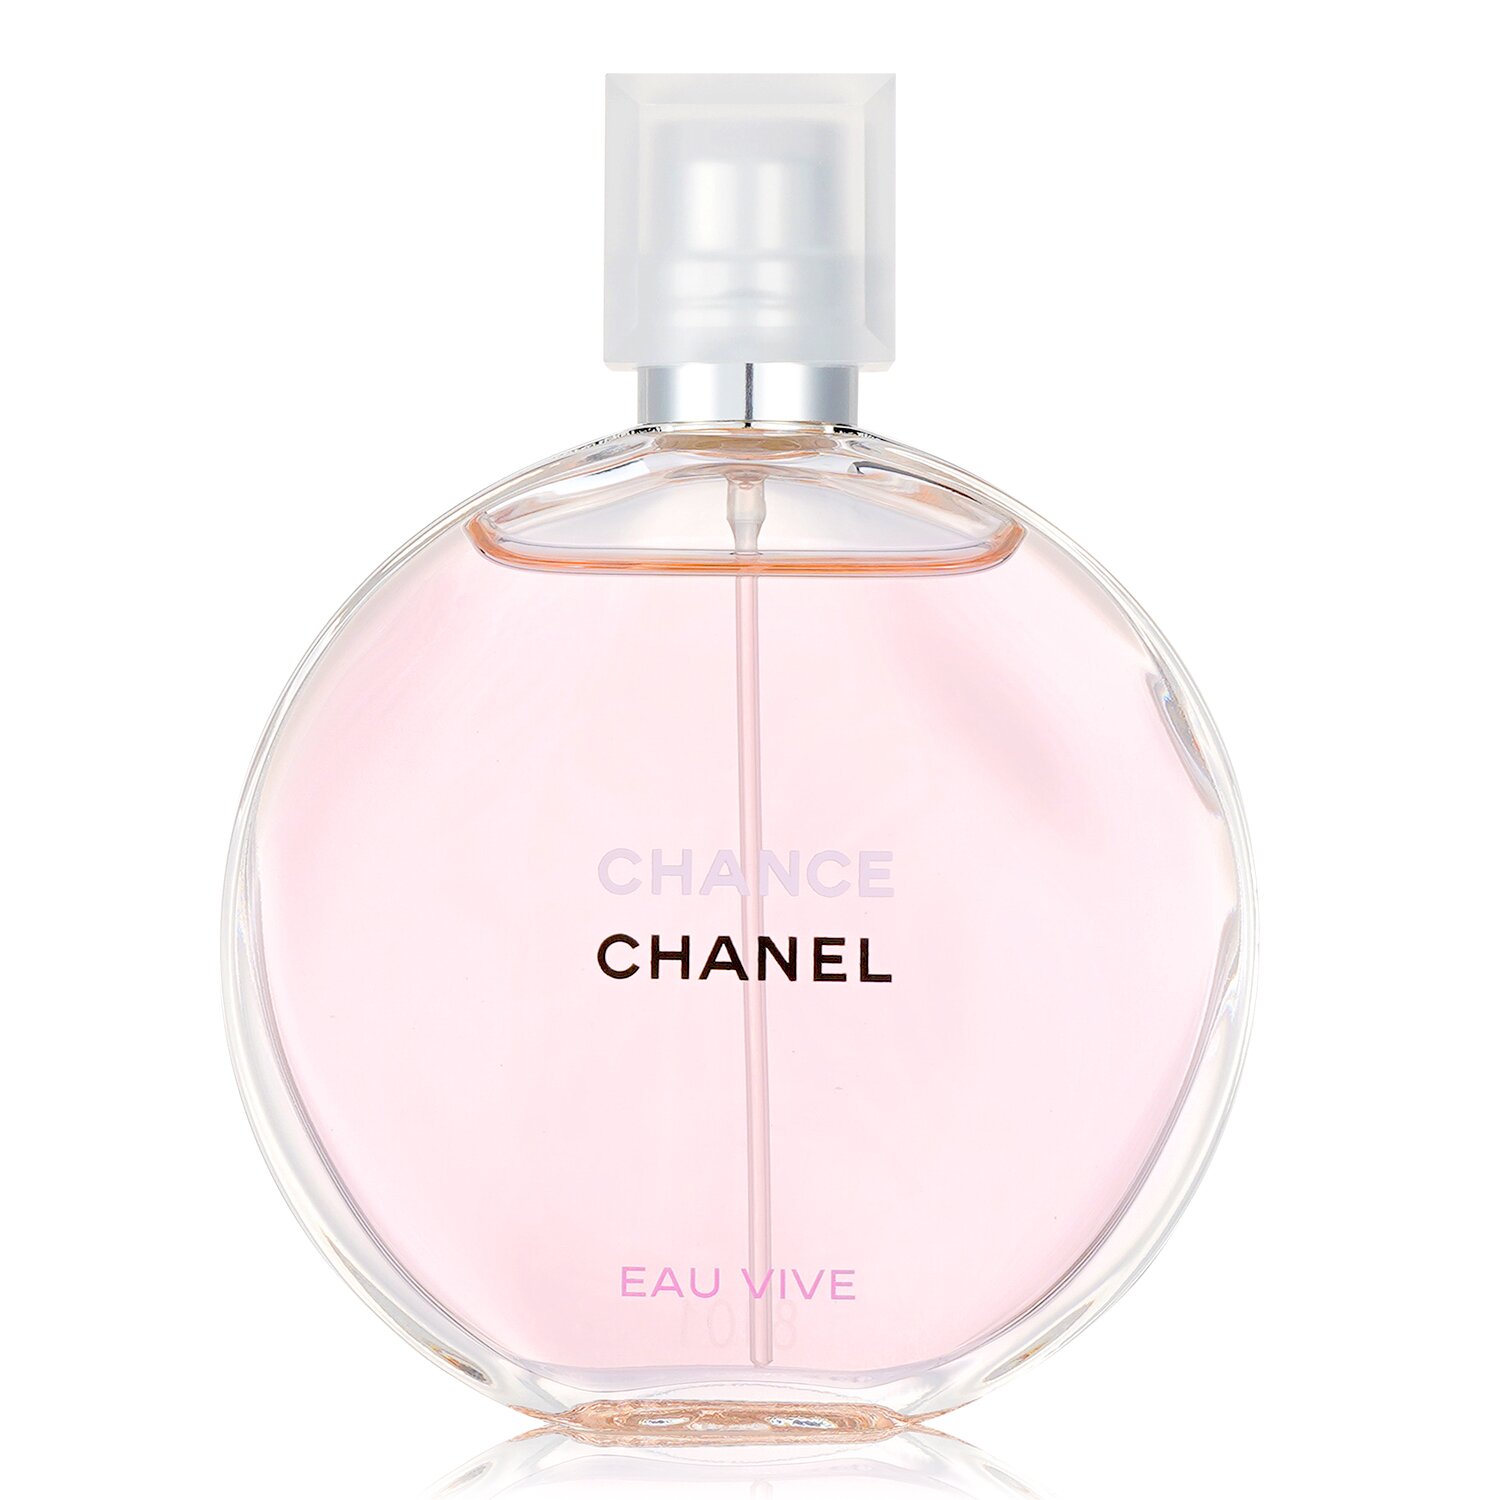 Chanel Chance Eau Vive Eau de Toilette Spray 1.7 oz